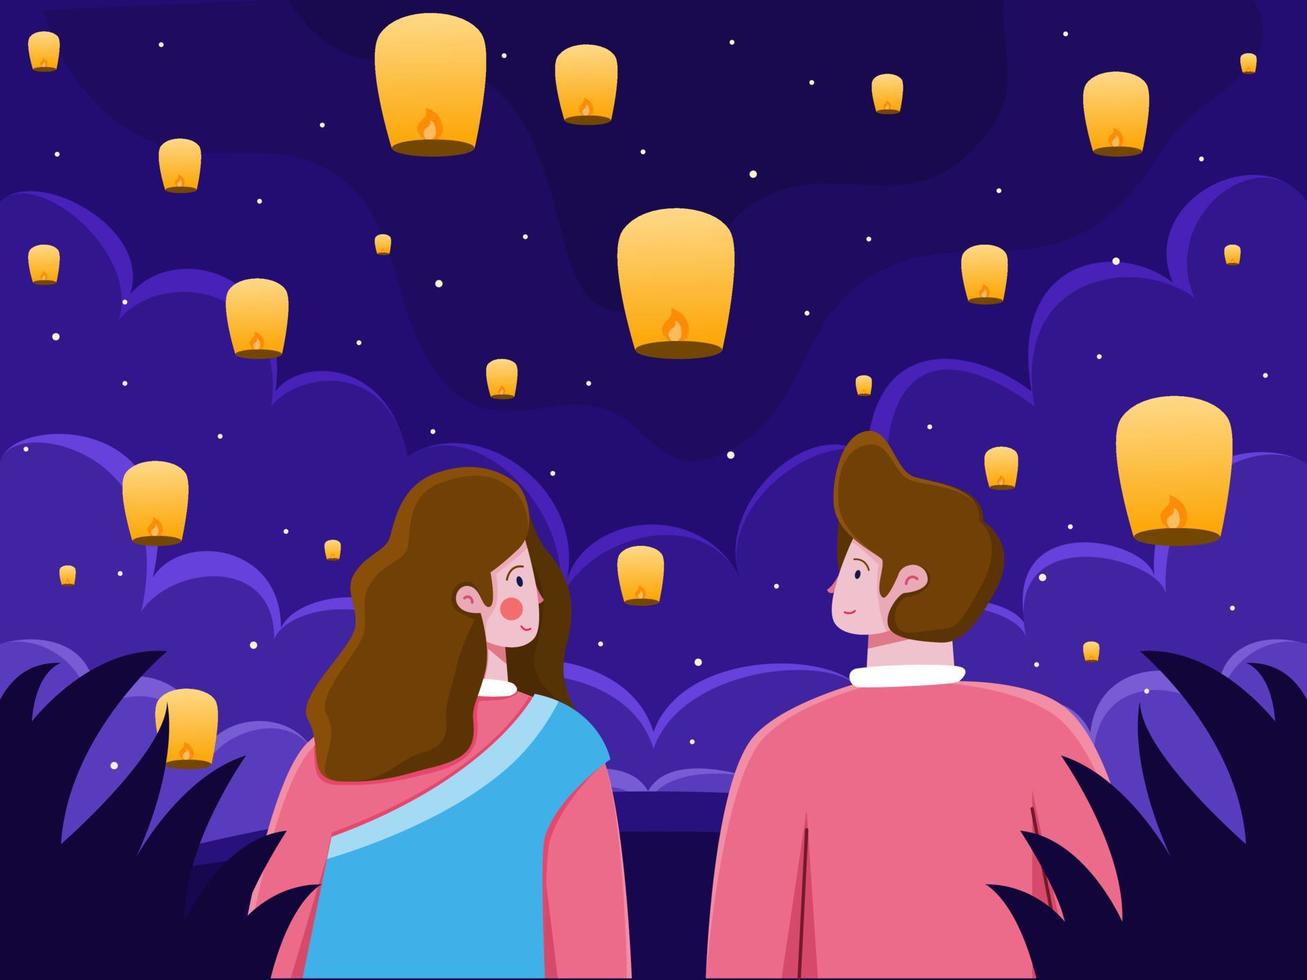 Subtropisch in beroep gaan archief paar genieten van mooie nacht samen met vliegende lantaarns om india diwali  festival te vieren. kan worden gebruikt voor wenskaart, ansichtkaart,  uitnodiging, banner, poster, web, sociale media, print, enz. 4220736 -  Download